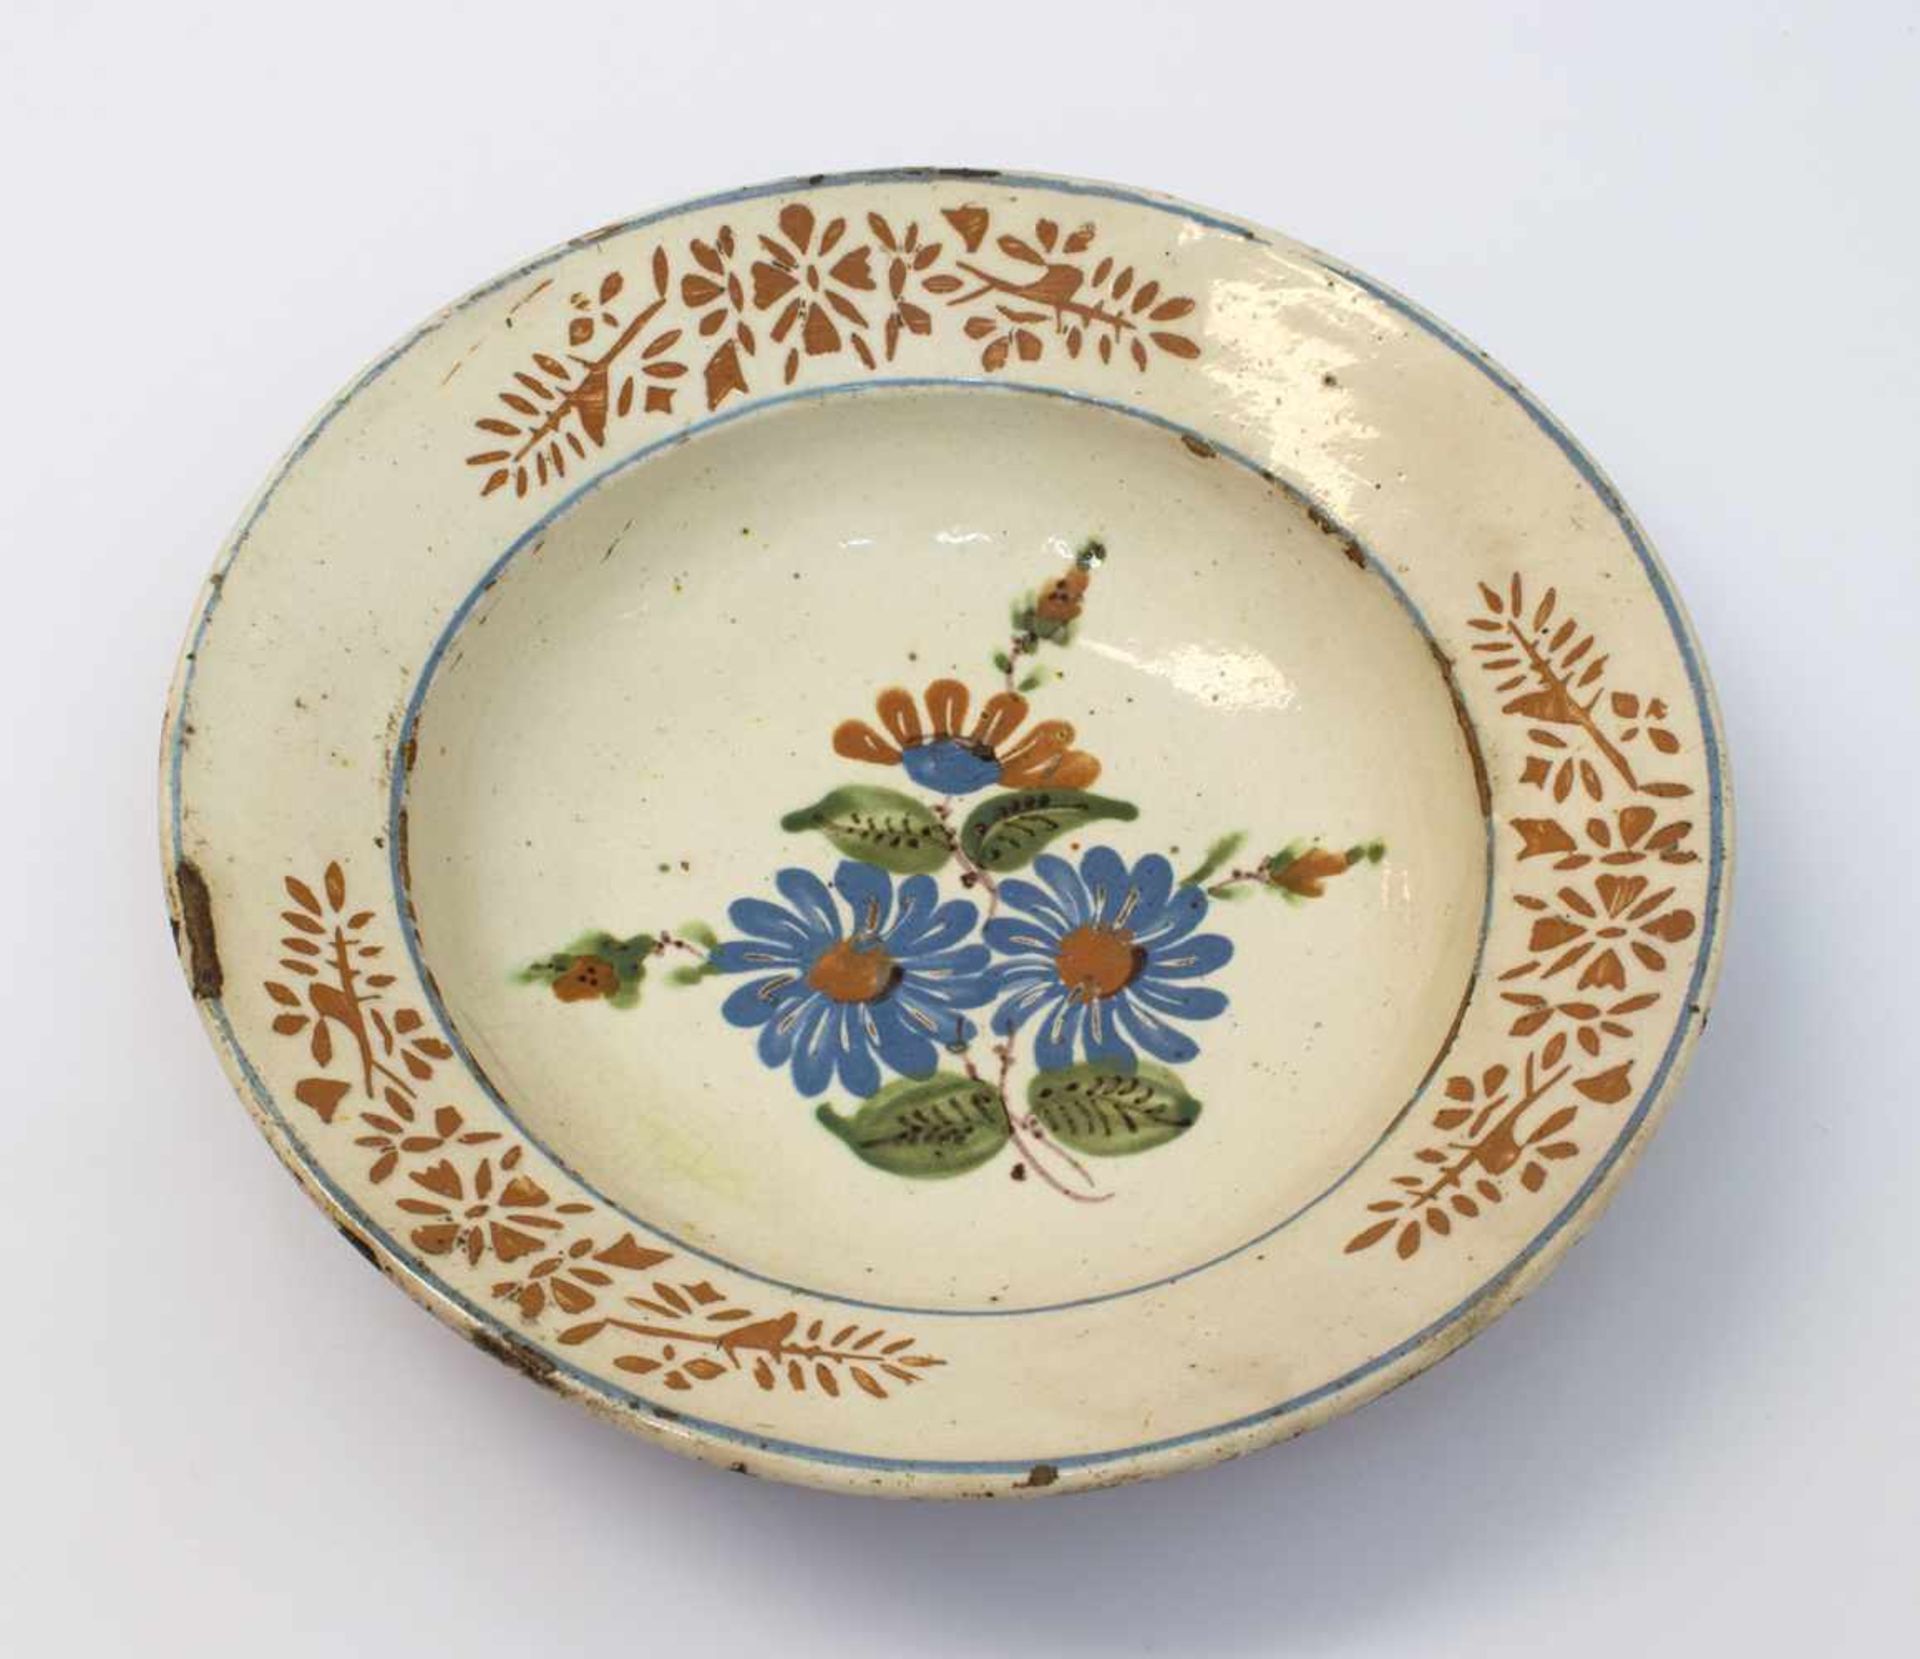 Schüsseltellerdeutsch um 1850, beige glasierte Keramik mit typischer Bauernmalerei im Spiegel, auf